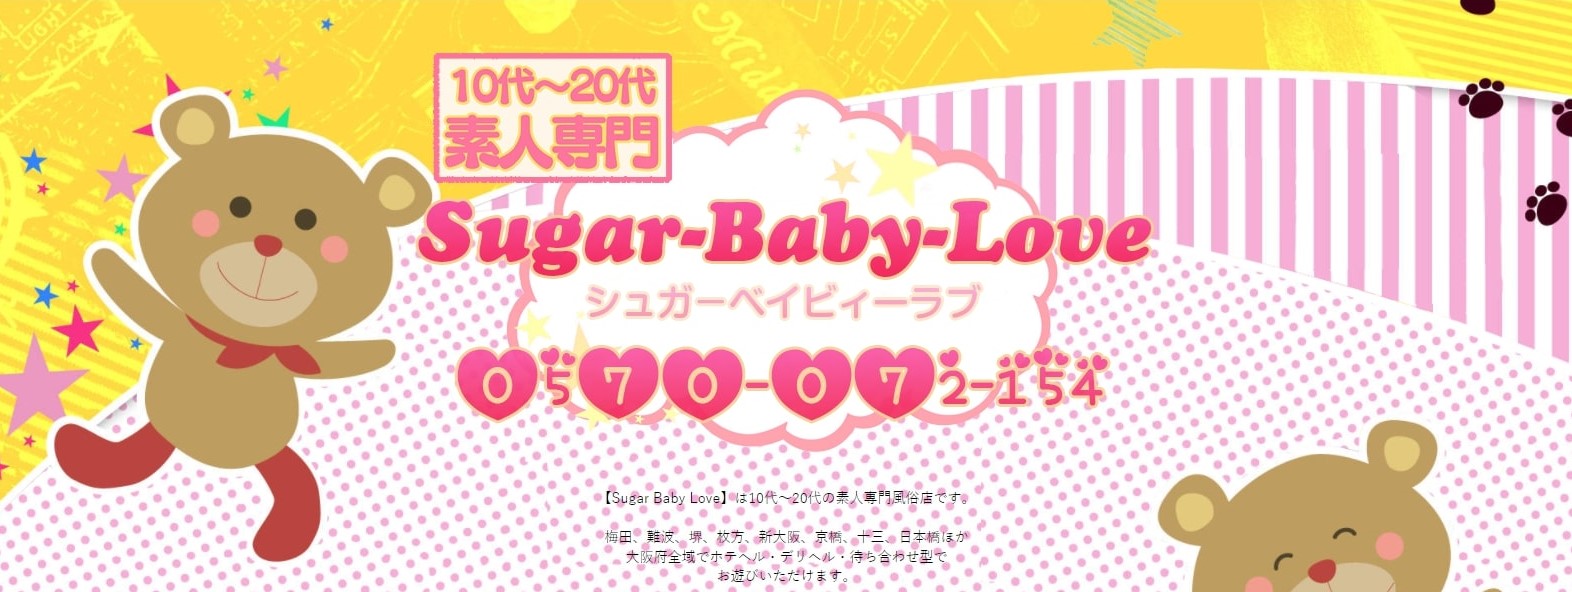 デリヘル Sugar-Baby-Love バナー